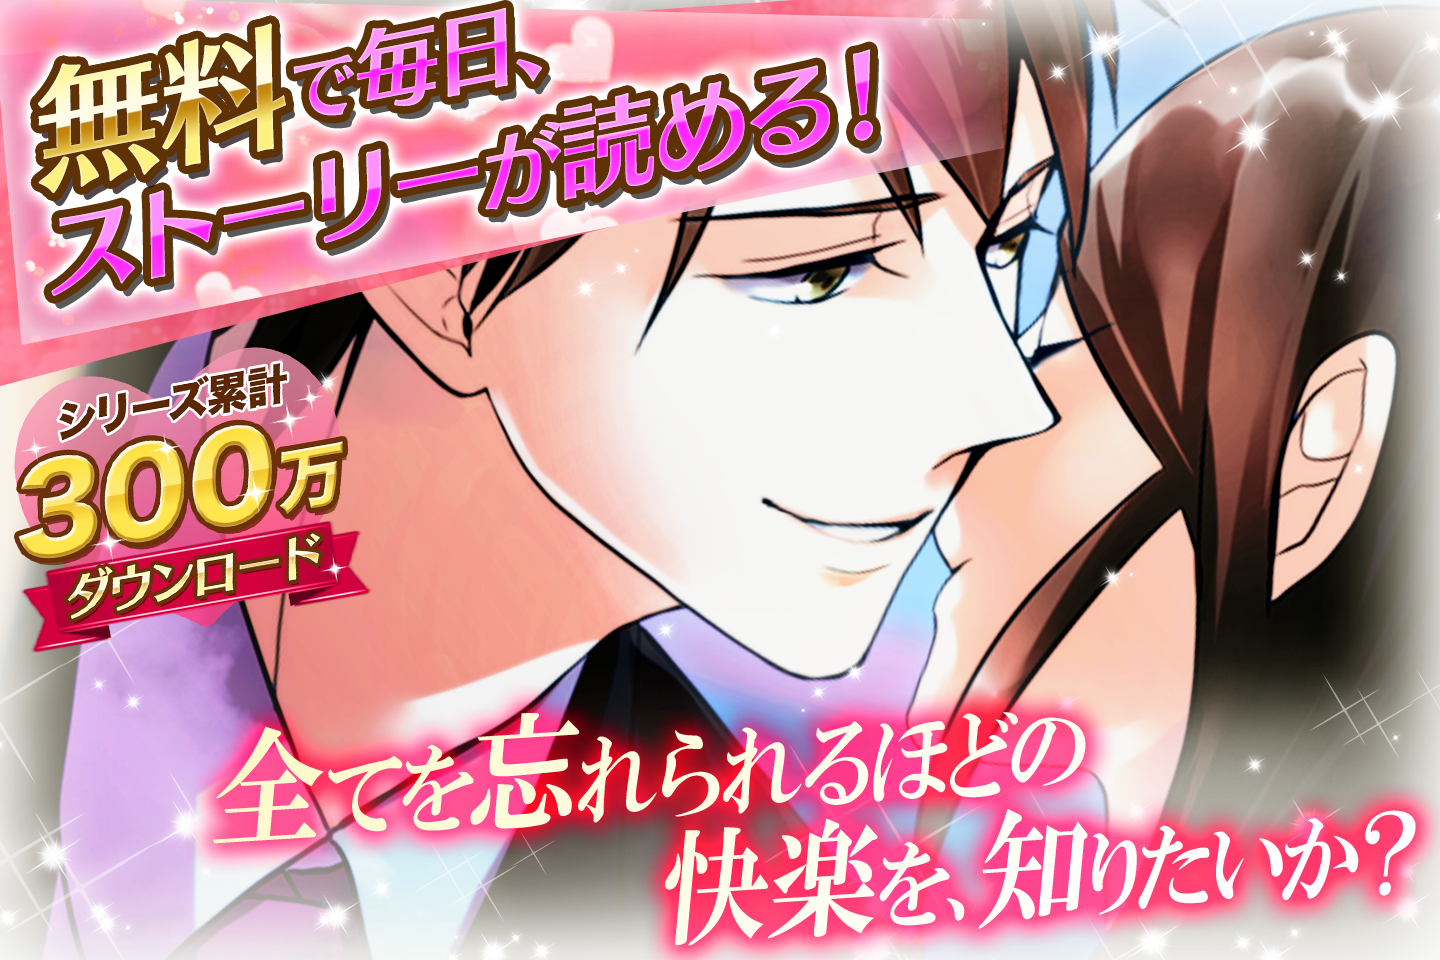 Screenshot 1 of Penipuan tunangan ◆ Game cinta gratis populer untuk wanita! Menikah dengan Pangeran Tampan ~Cinta Sejati dan Wajah Rahasia~ 1.2.0